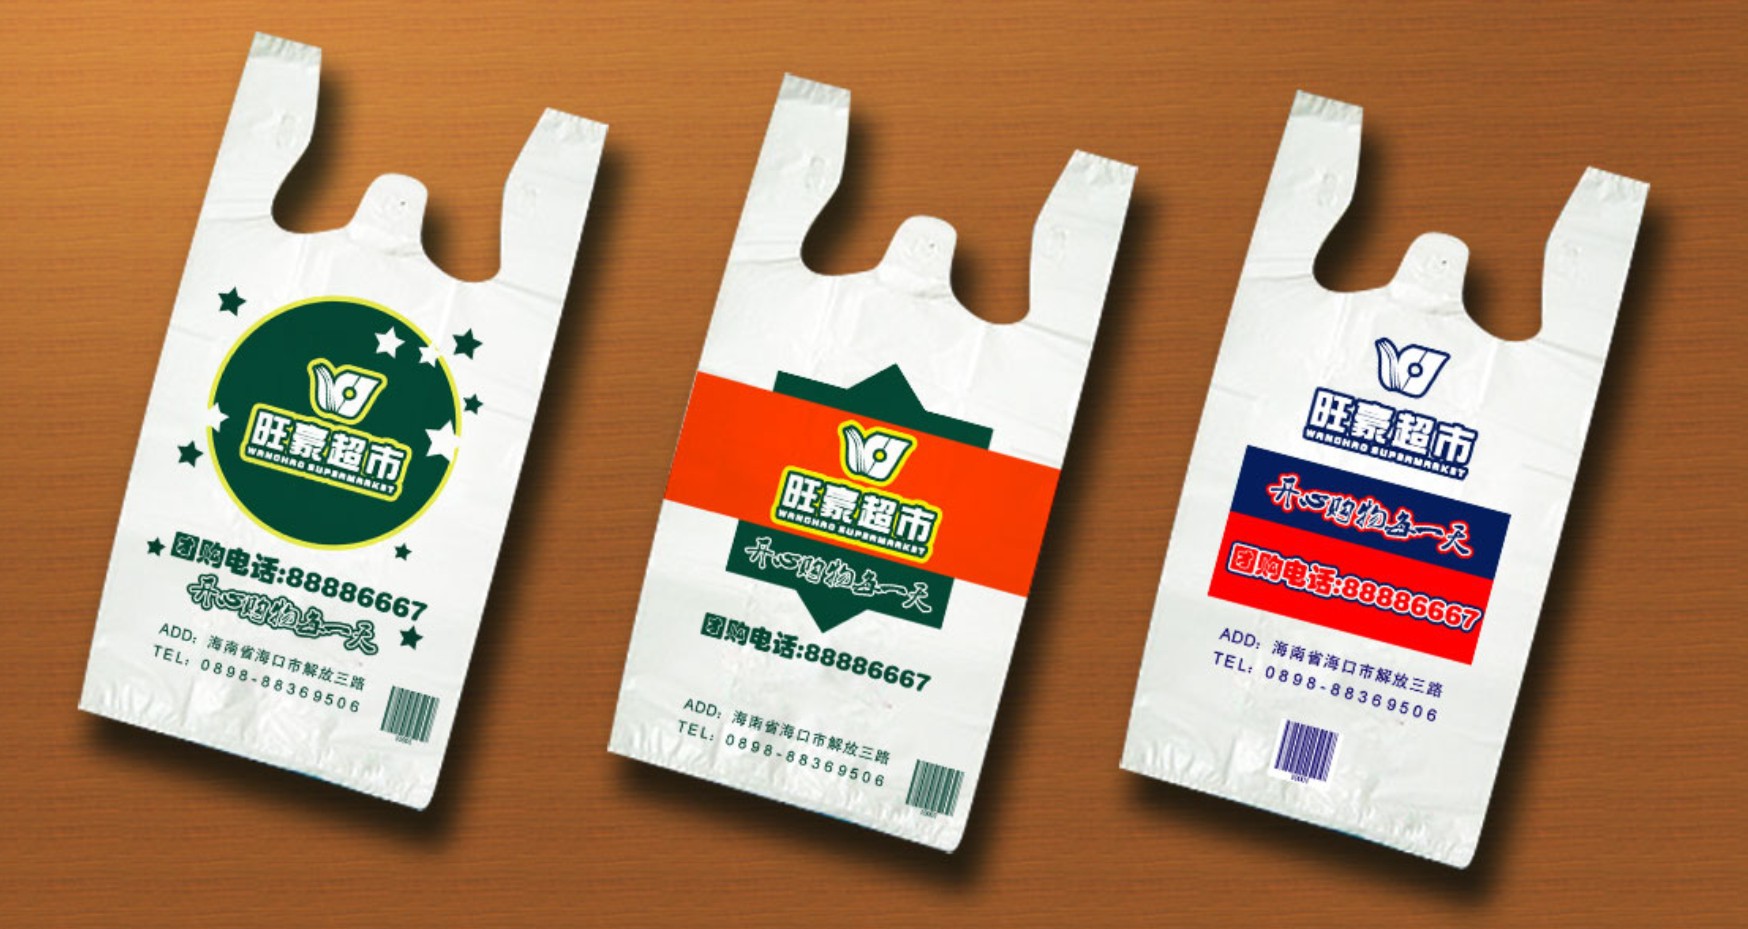 厂价马夹袋 塑料包装袋 各种背心袋定制 加logo免费设计